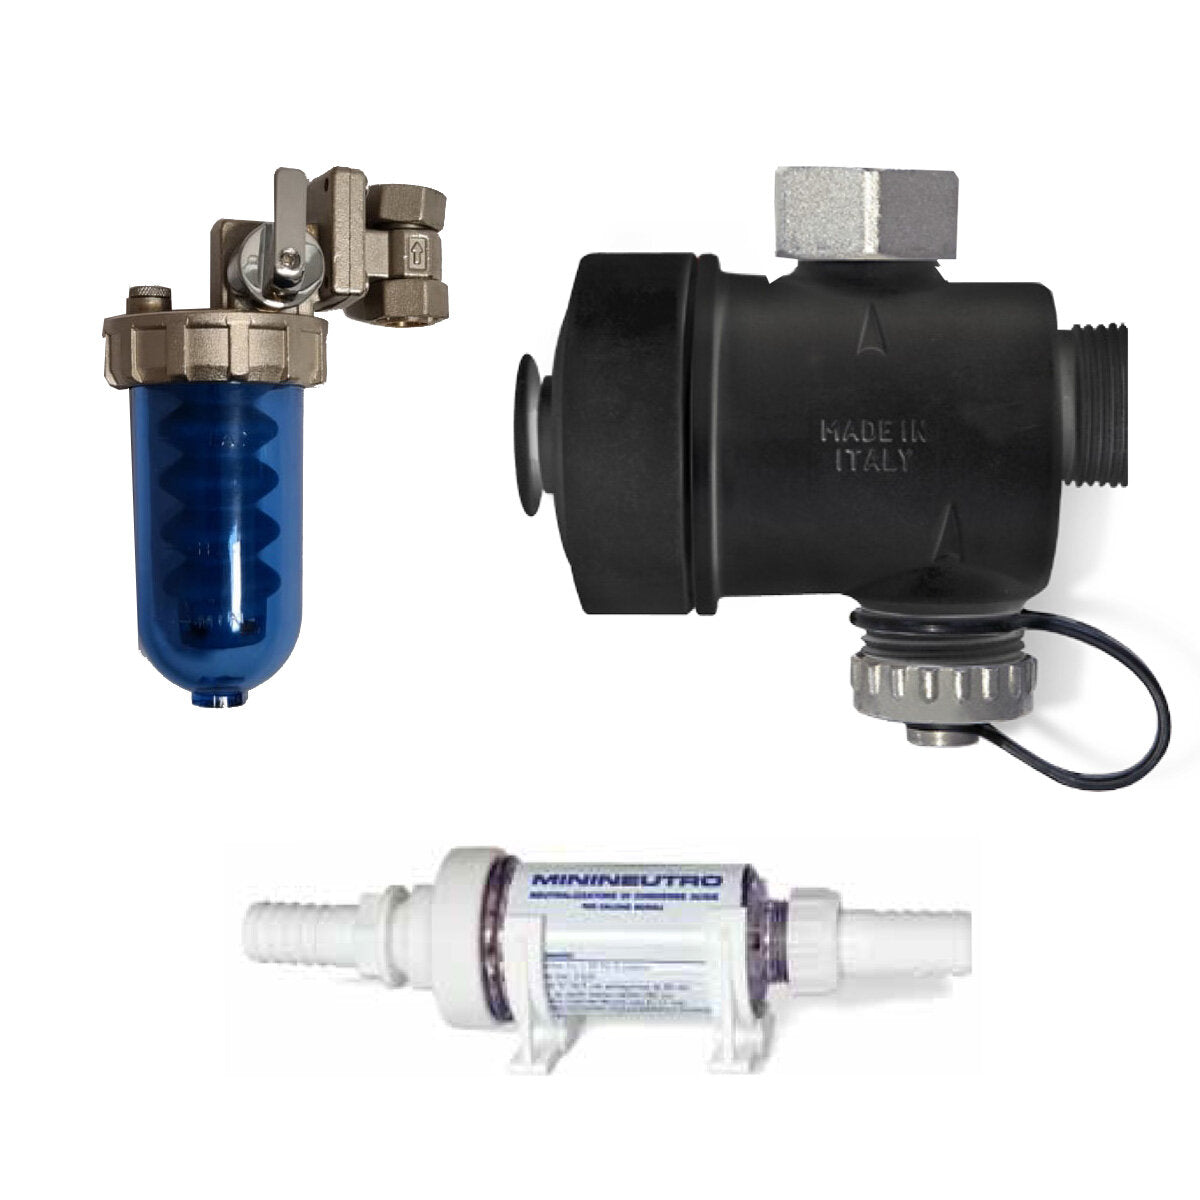 ECO boiler saver kit including dispenser, dirt separator and neutraliser